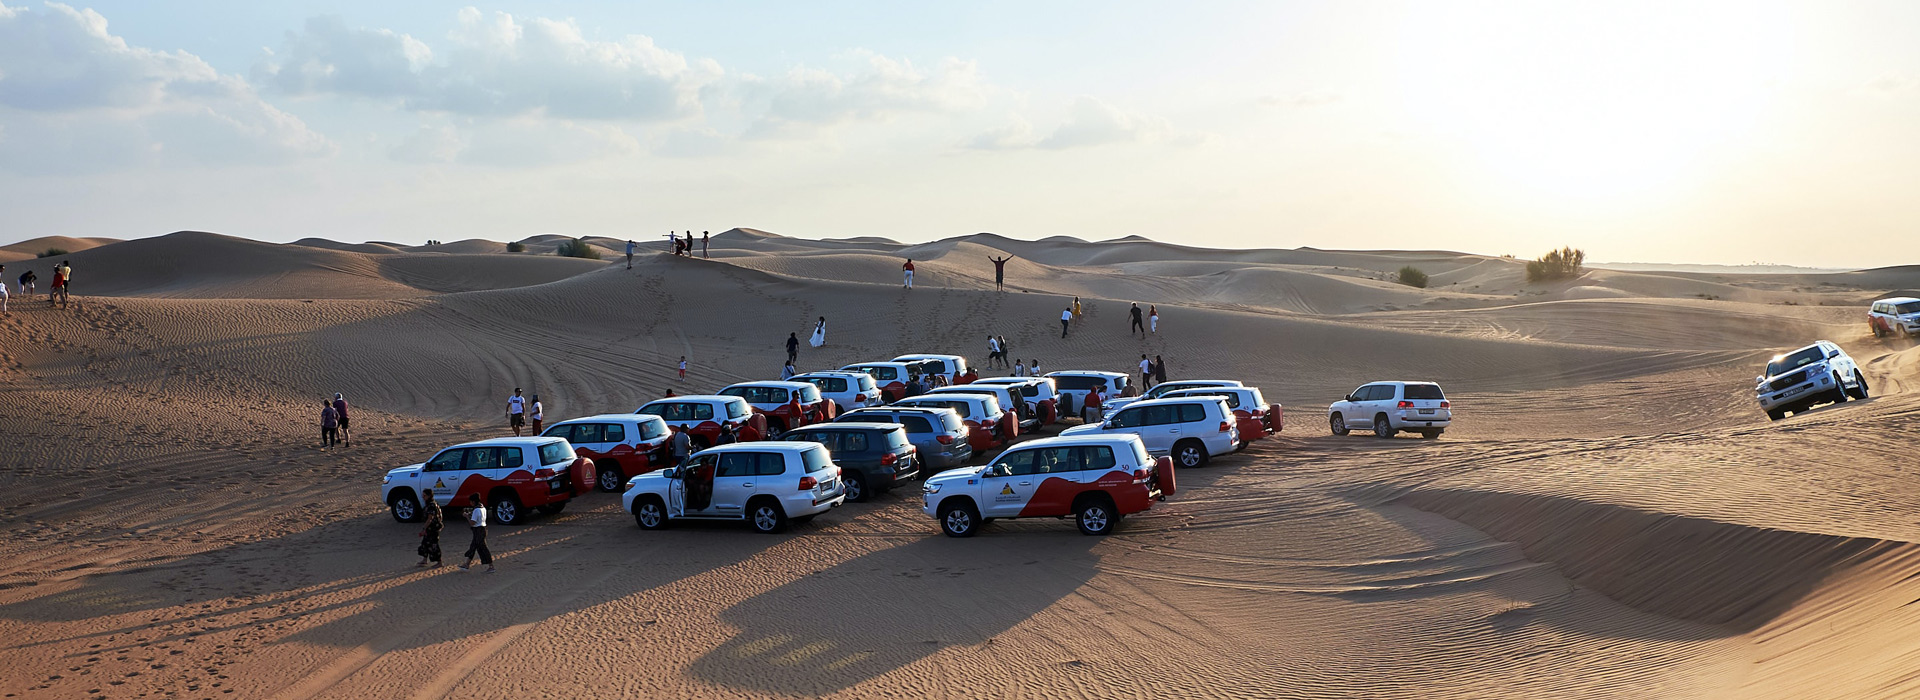 Desert safari in Umm Al Quwain | Desert safari in Dubai